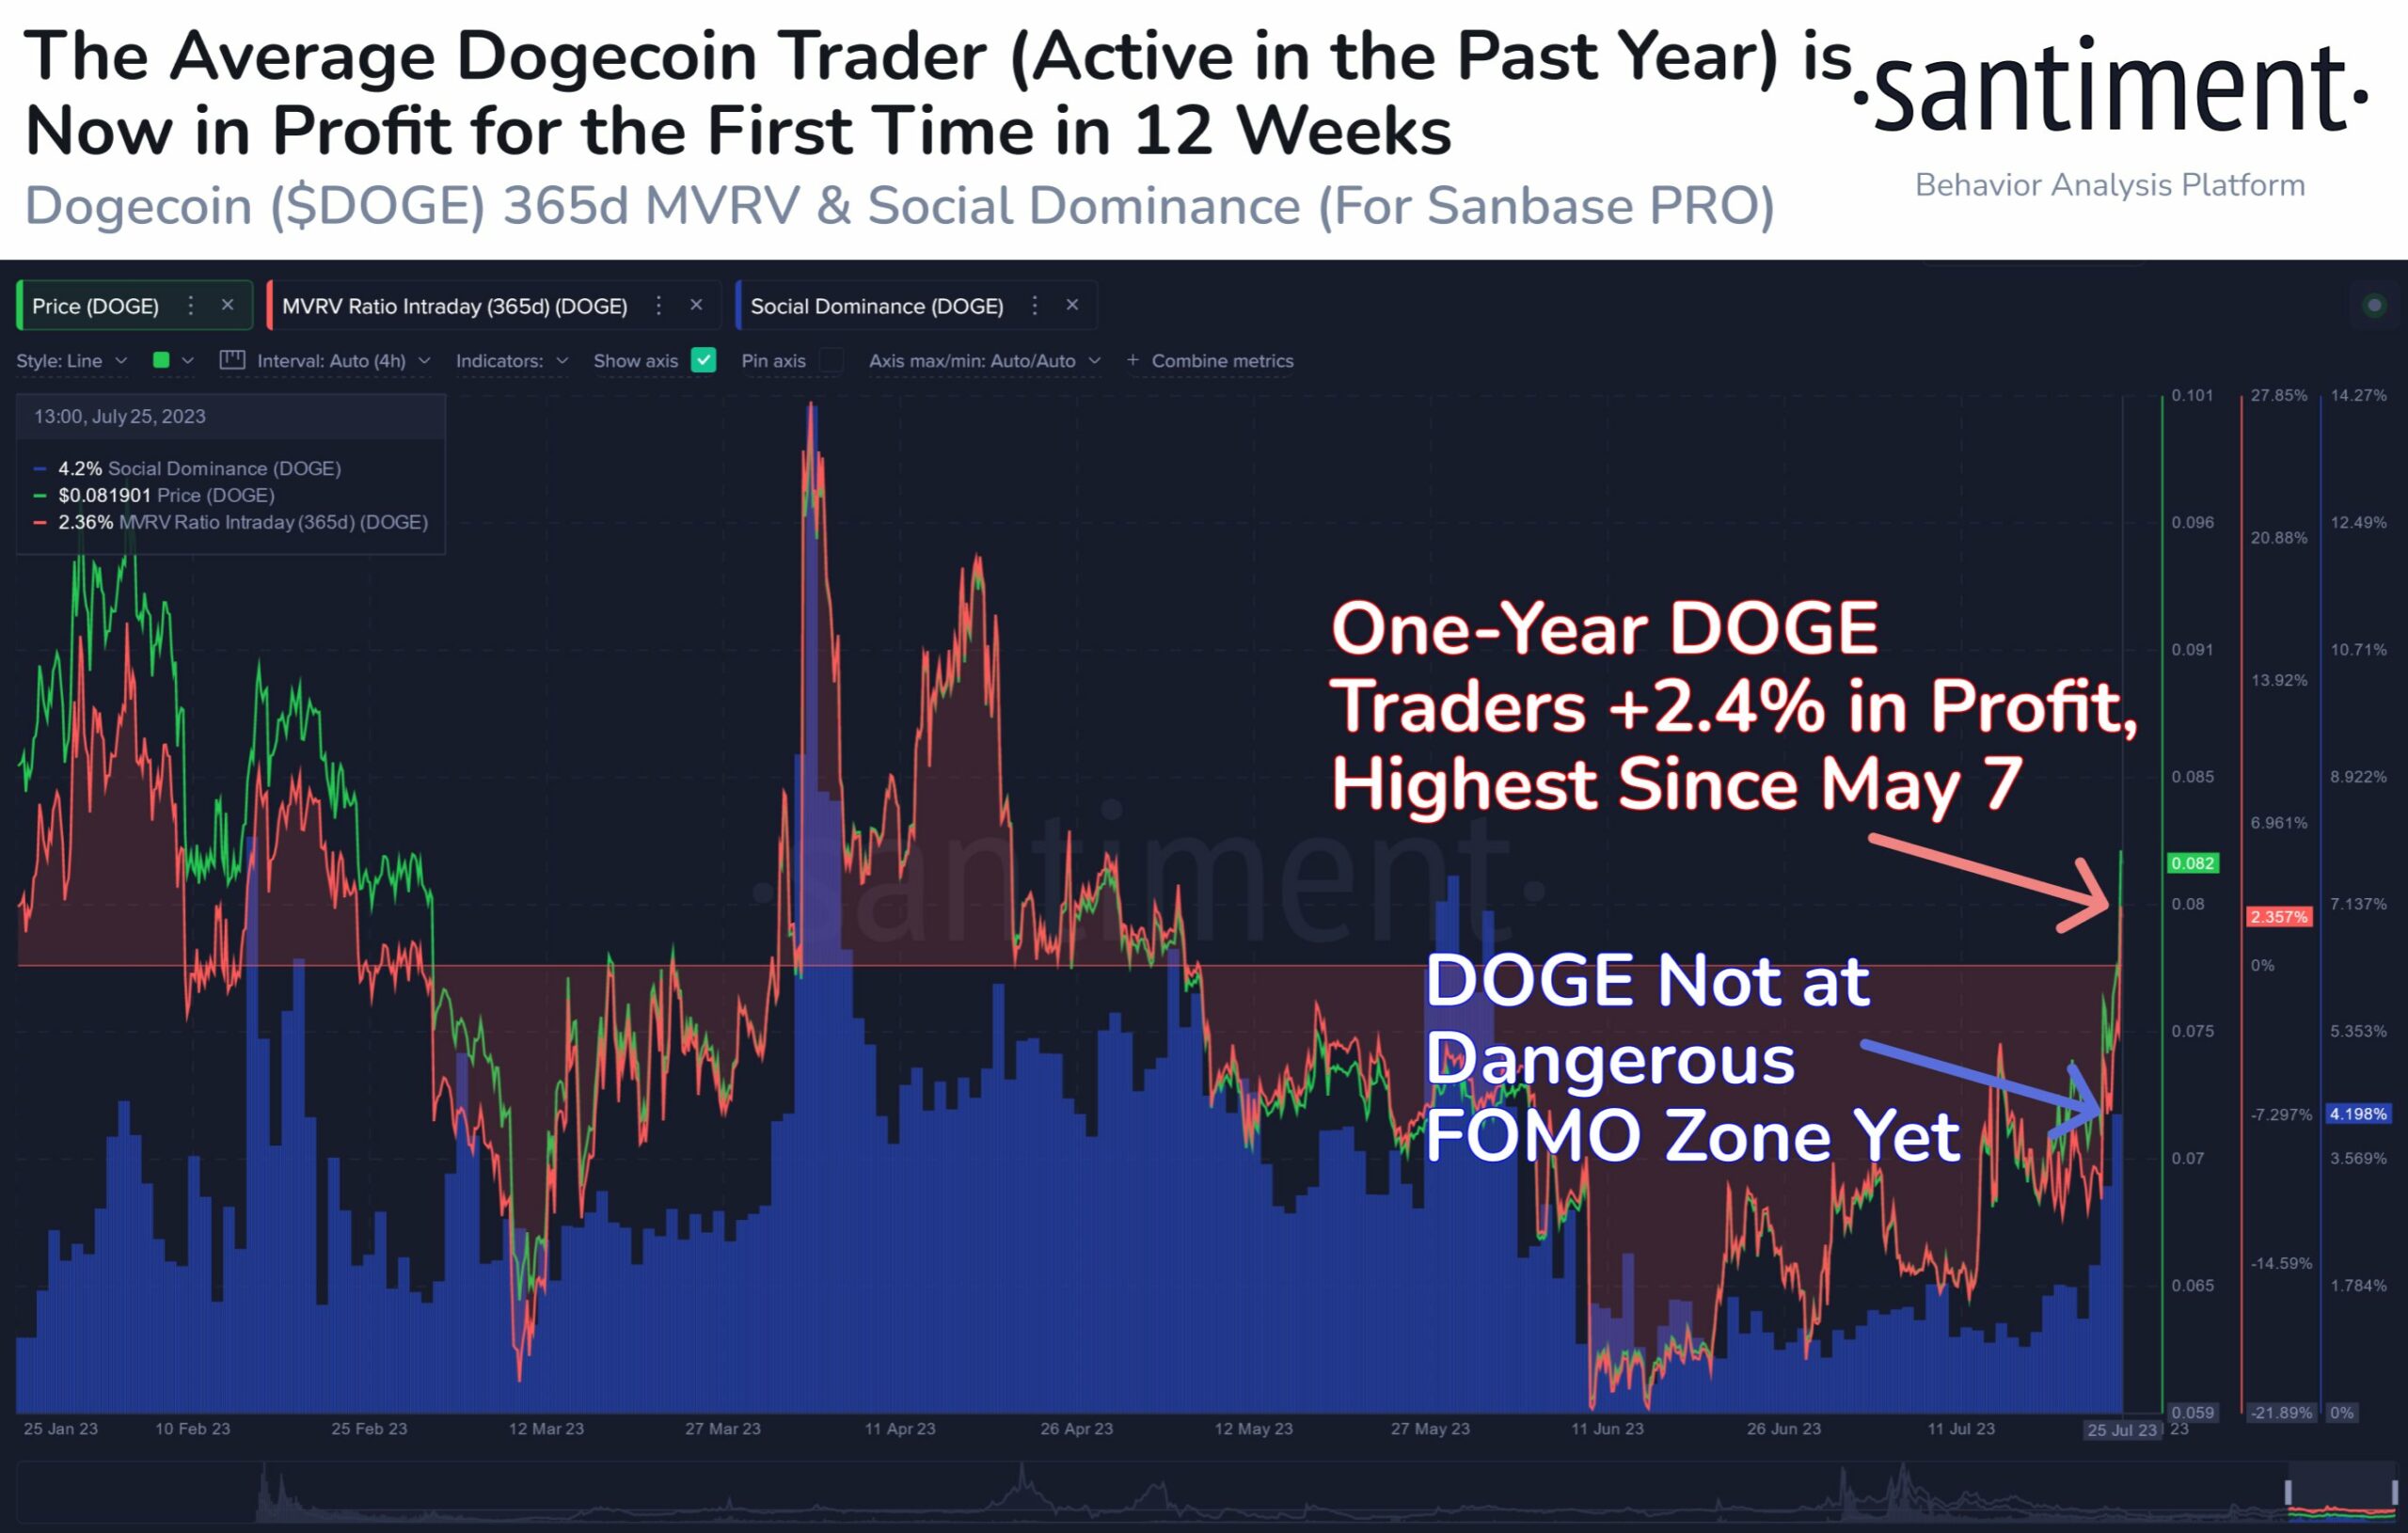 Average Dogecoin trader back in profit